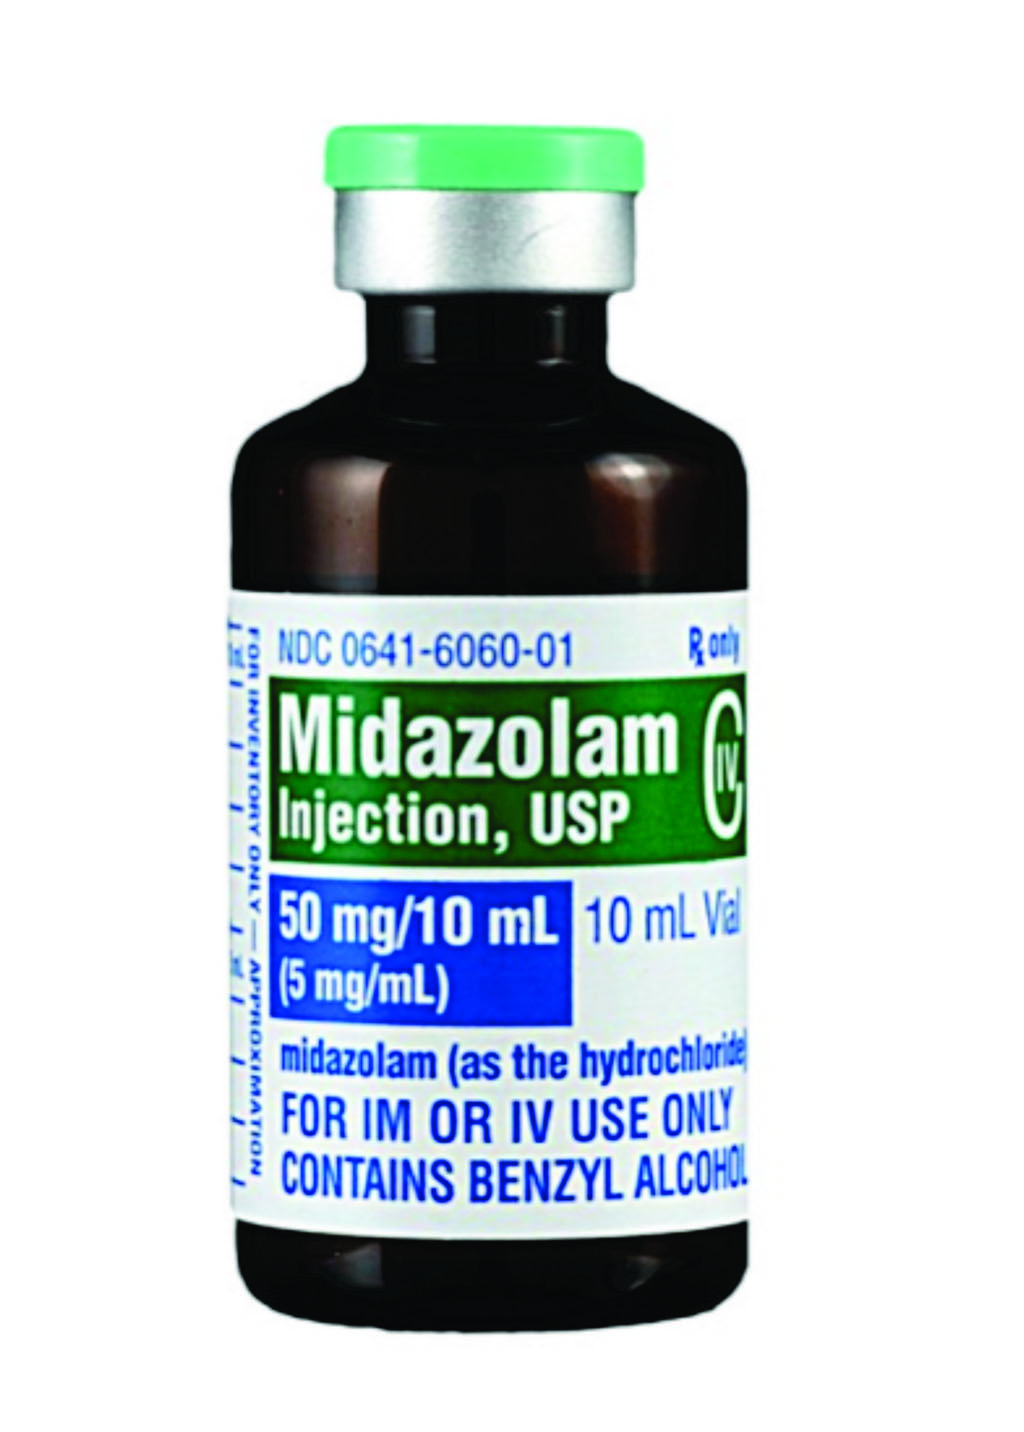 Imagen: El midazolam, una droga usada para aliviar síntomas en el cuidado paliativo a los pacientes terminales (Fotografía cortesía de WebMD).